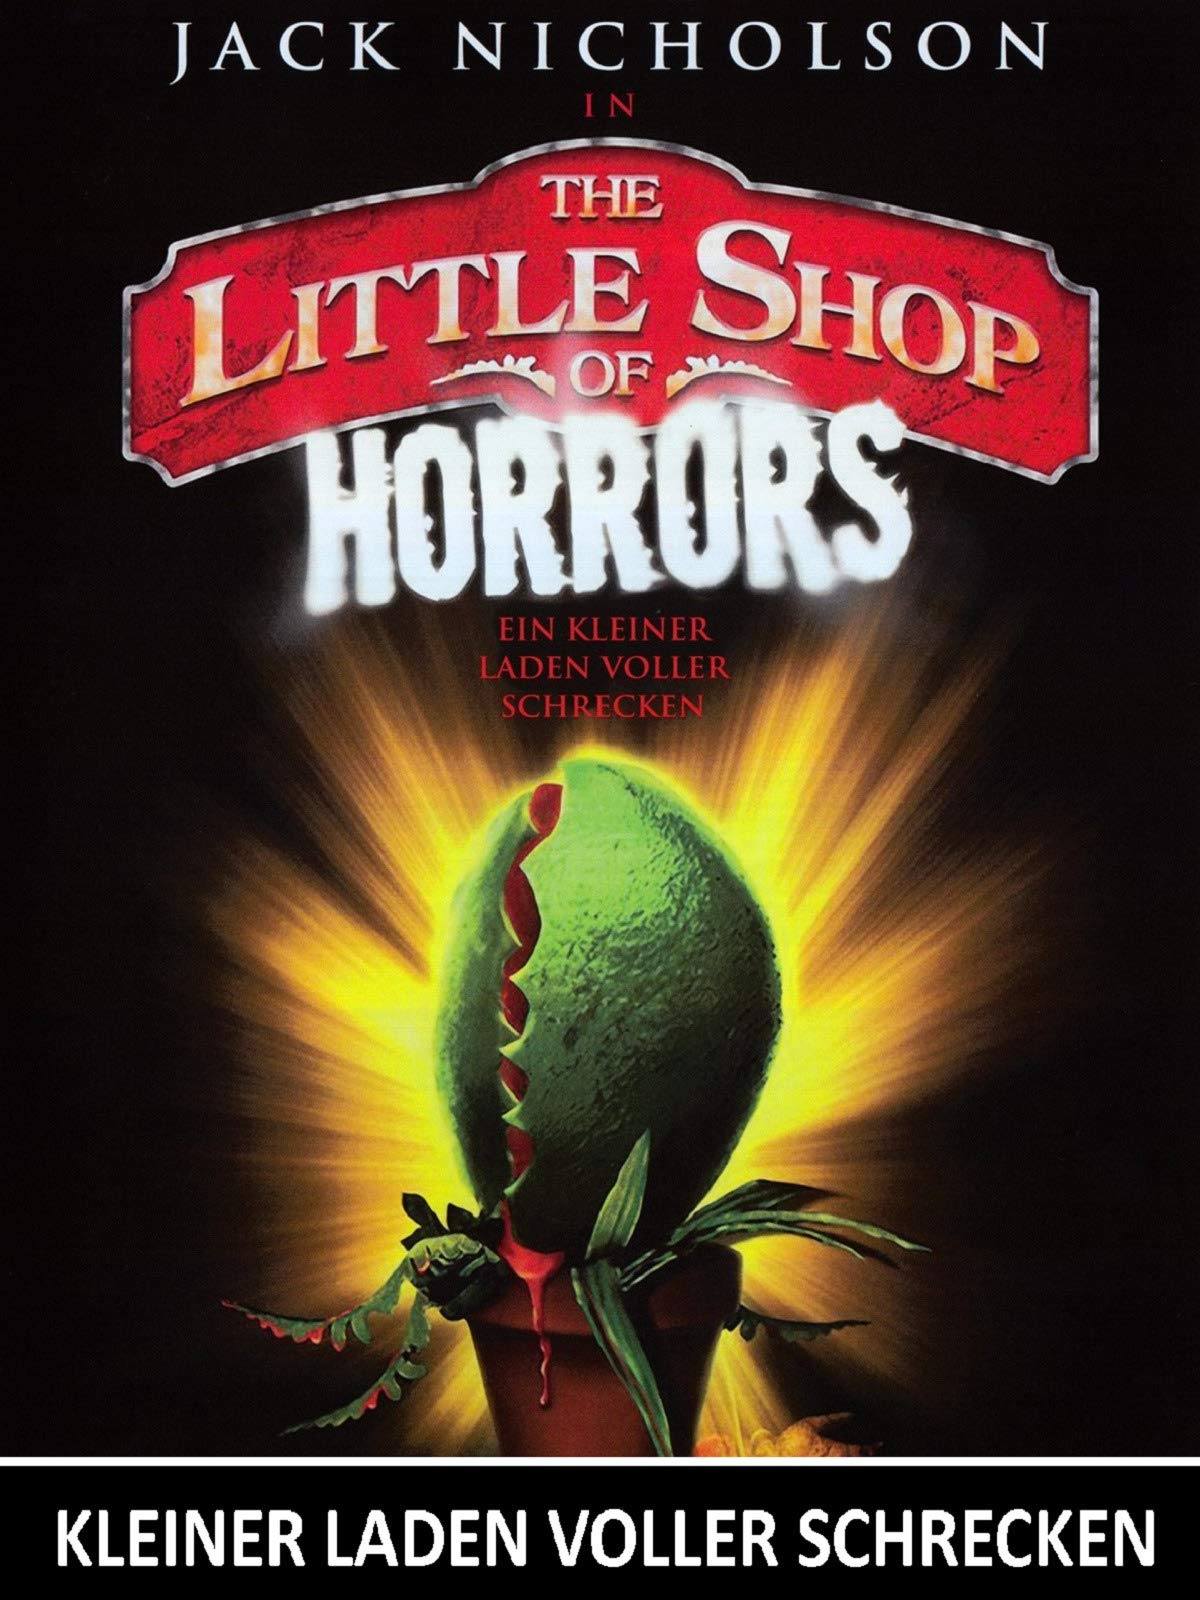 Plakatmotiv: Kleiner Laden voller Schrecken – Little Shop of Horrors (1960)